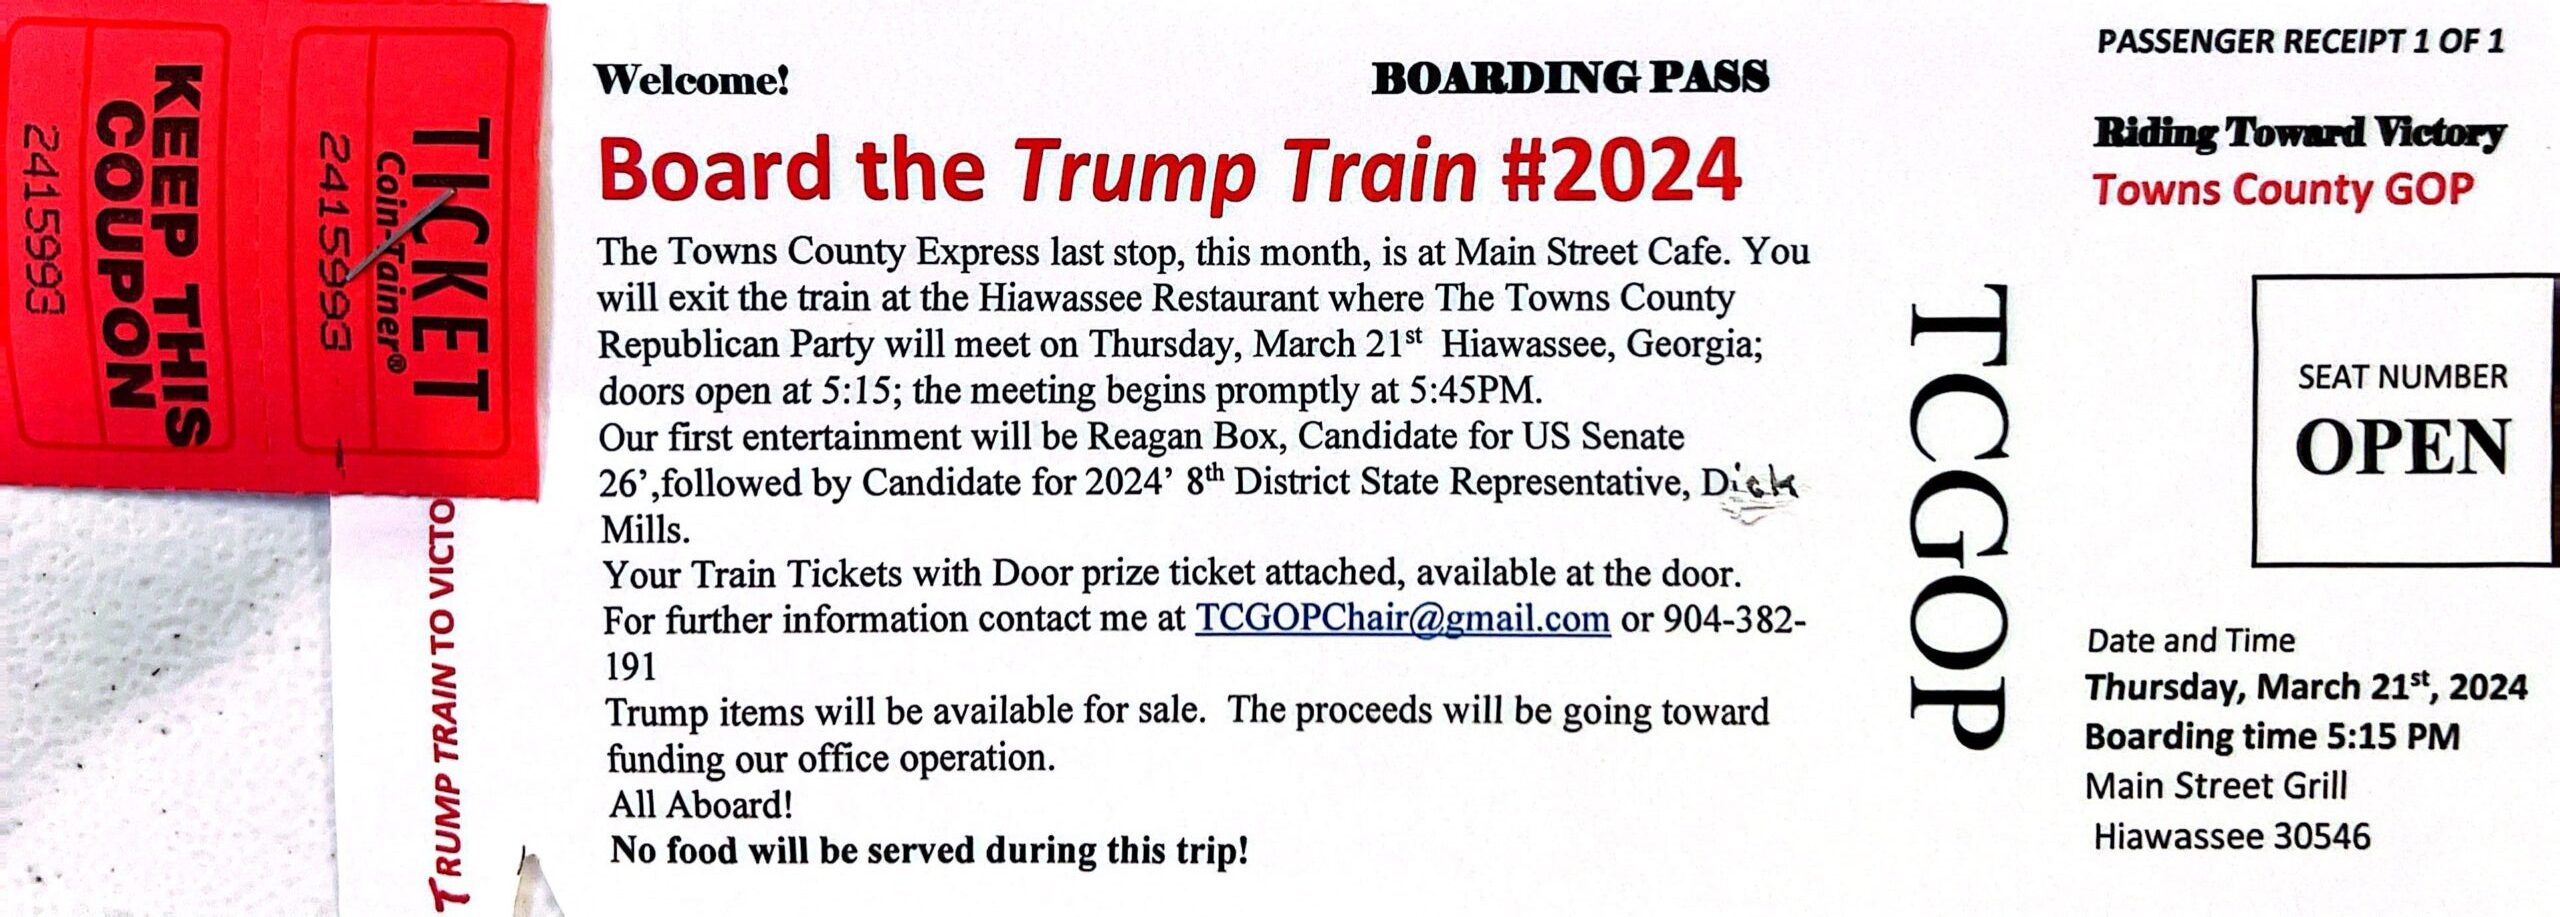 All Aboard Trump Train #2024